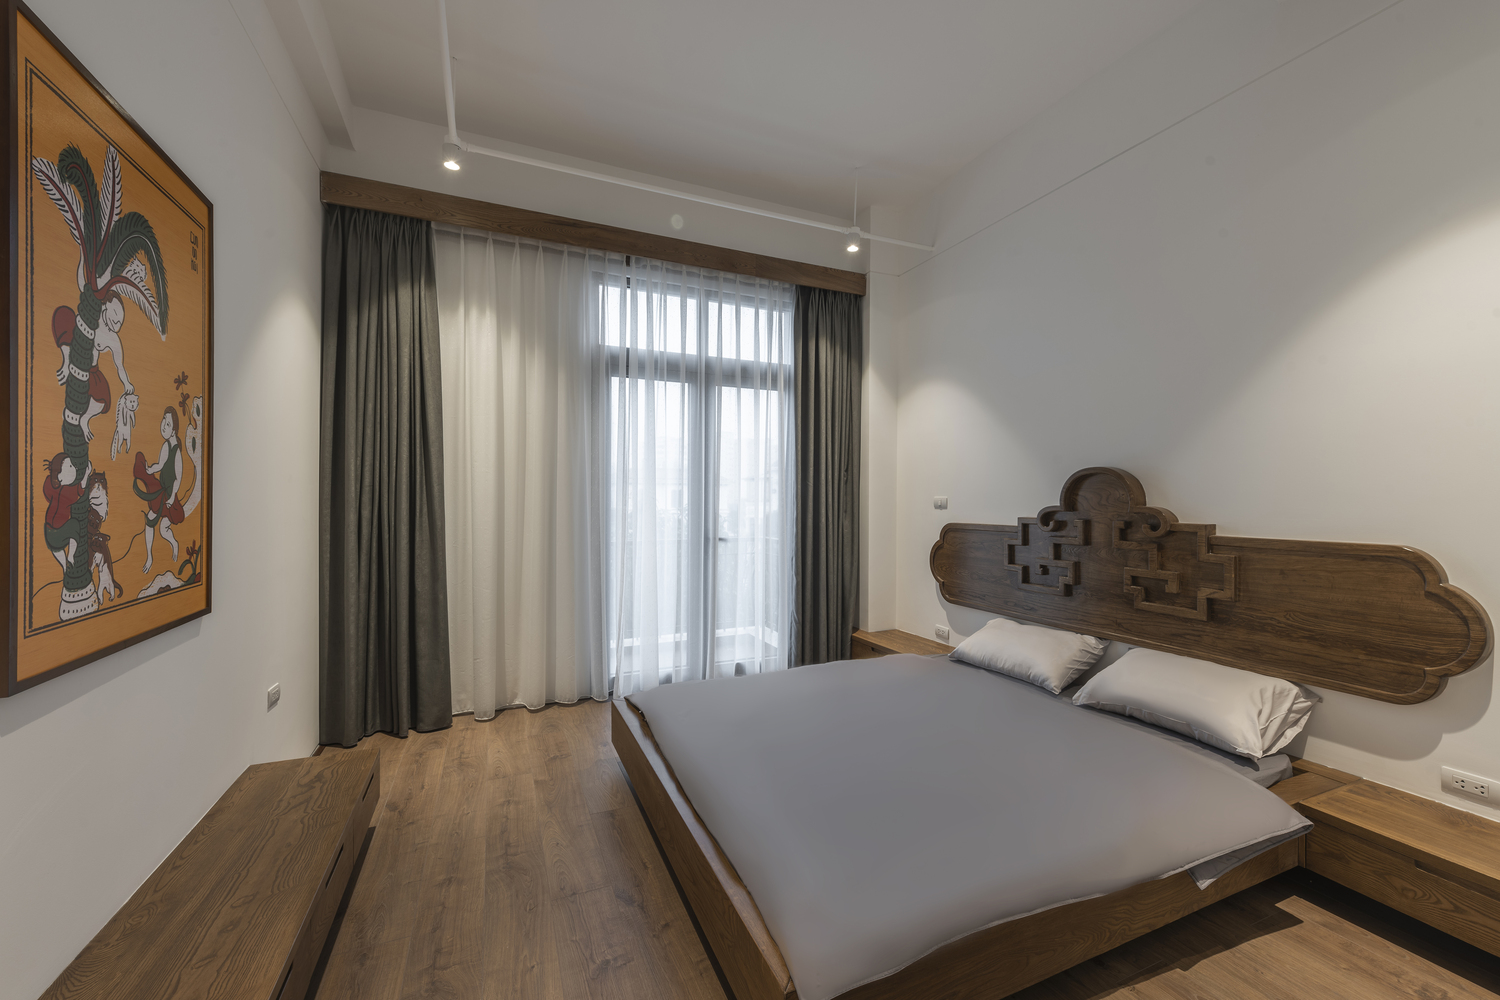 hình ảnh phòng ngủ với mảng gỗ trang trí đầu giường, đối diện là bức tranh Đông Hồ